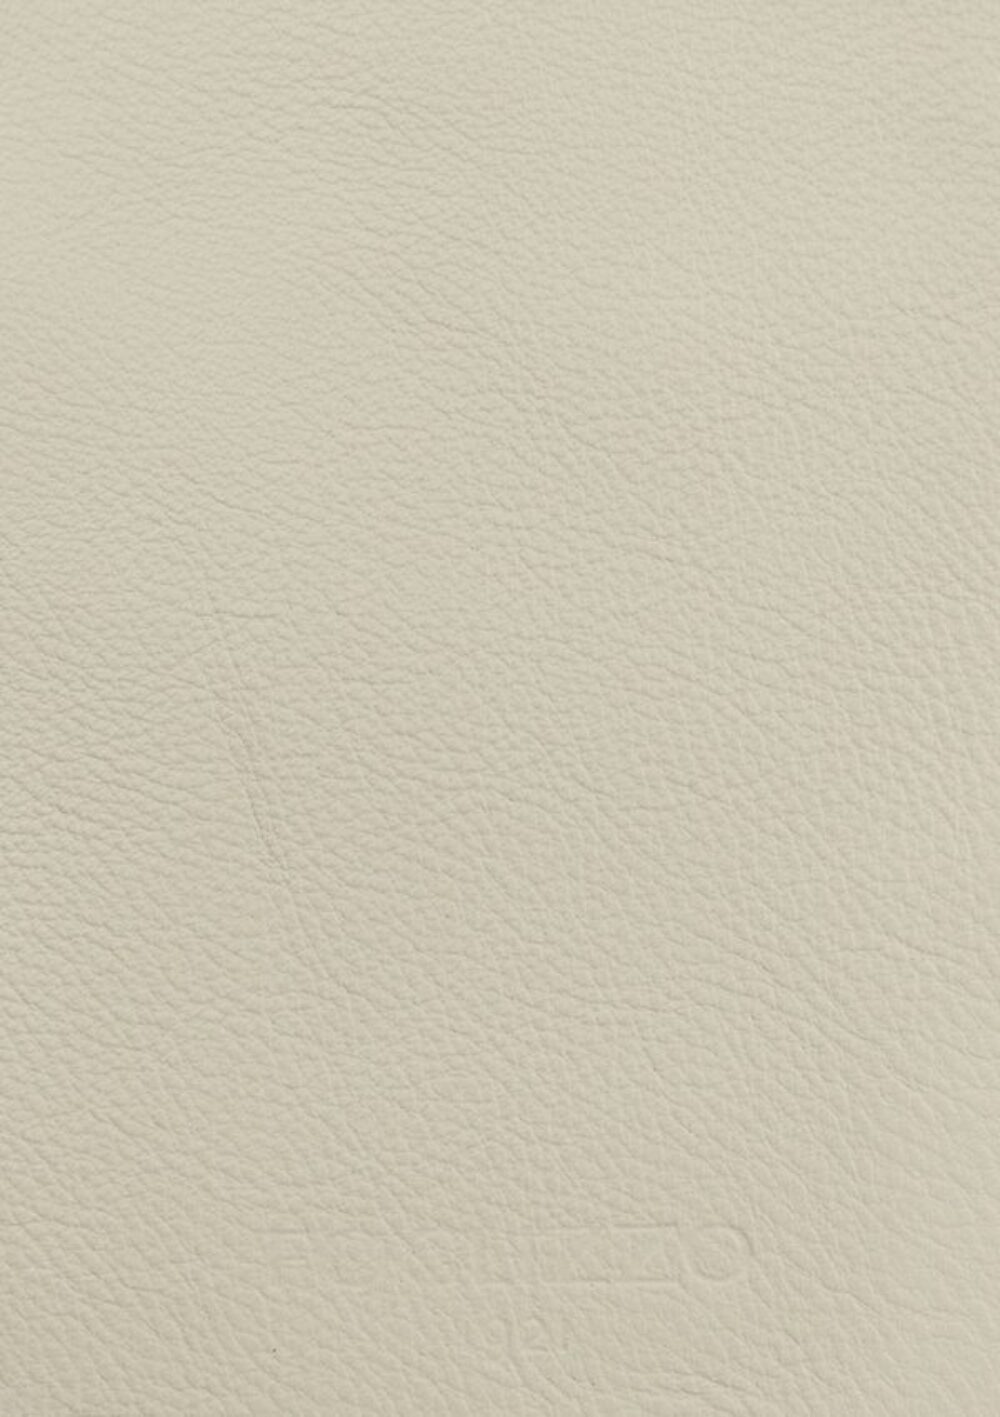 Diseño de lujo y alfombras de alta gama hechas a medida • Ivory White Jade